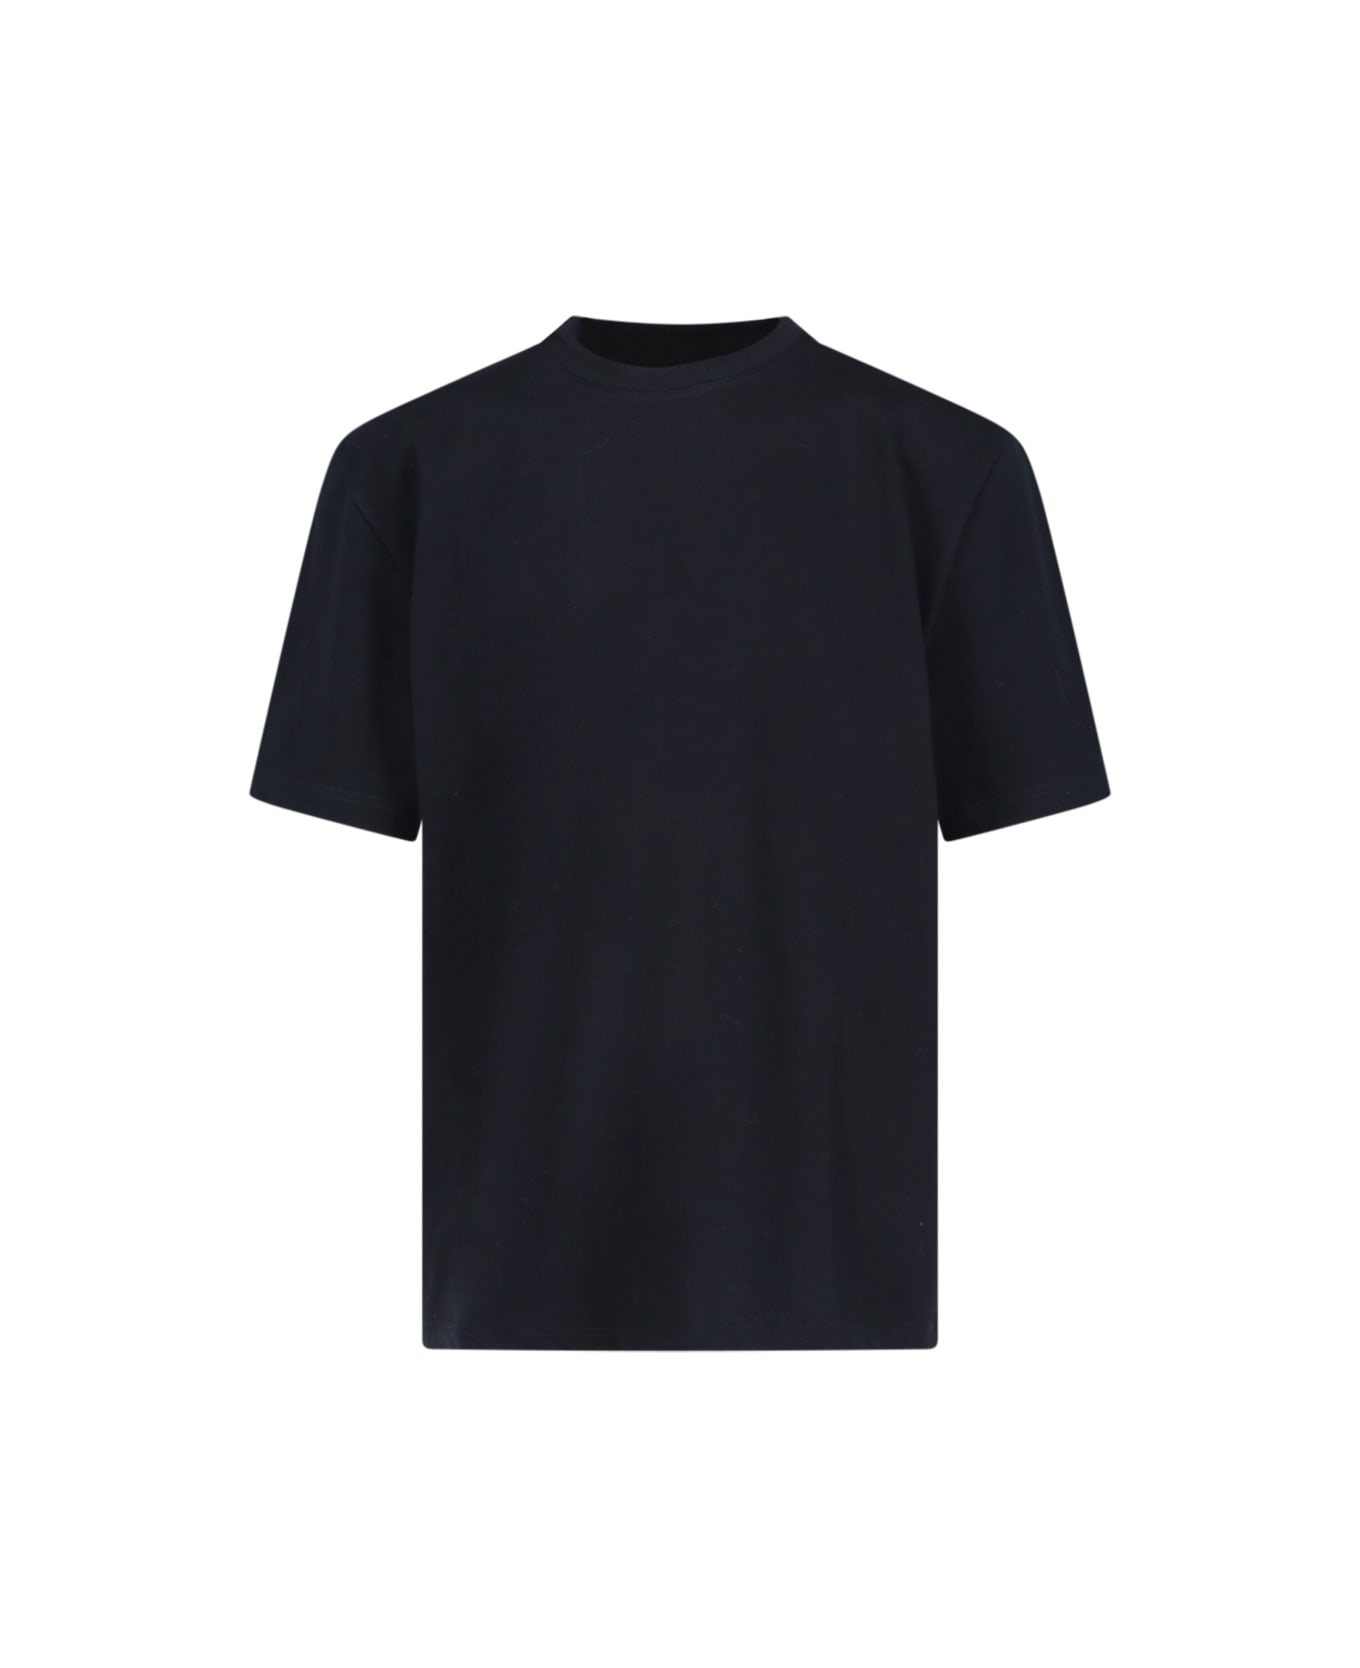 Studio Nicholson Oversize T-shirt - Black   シャツ